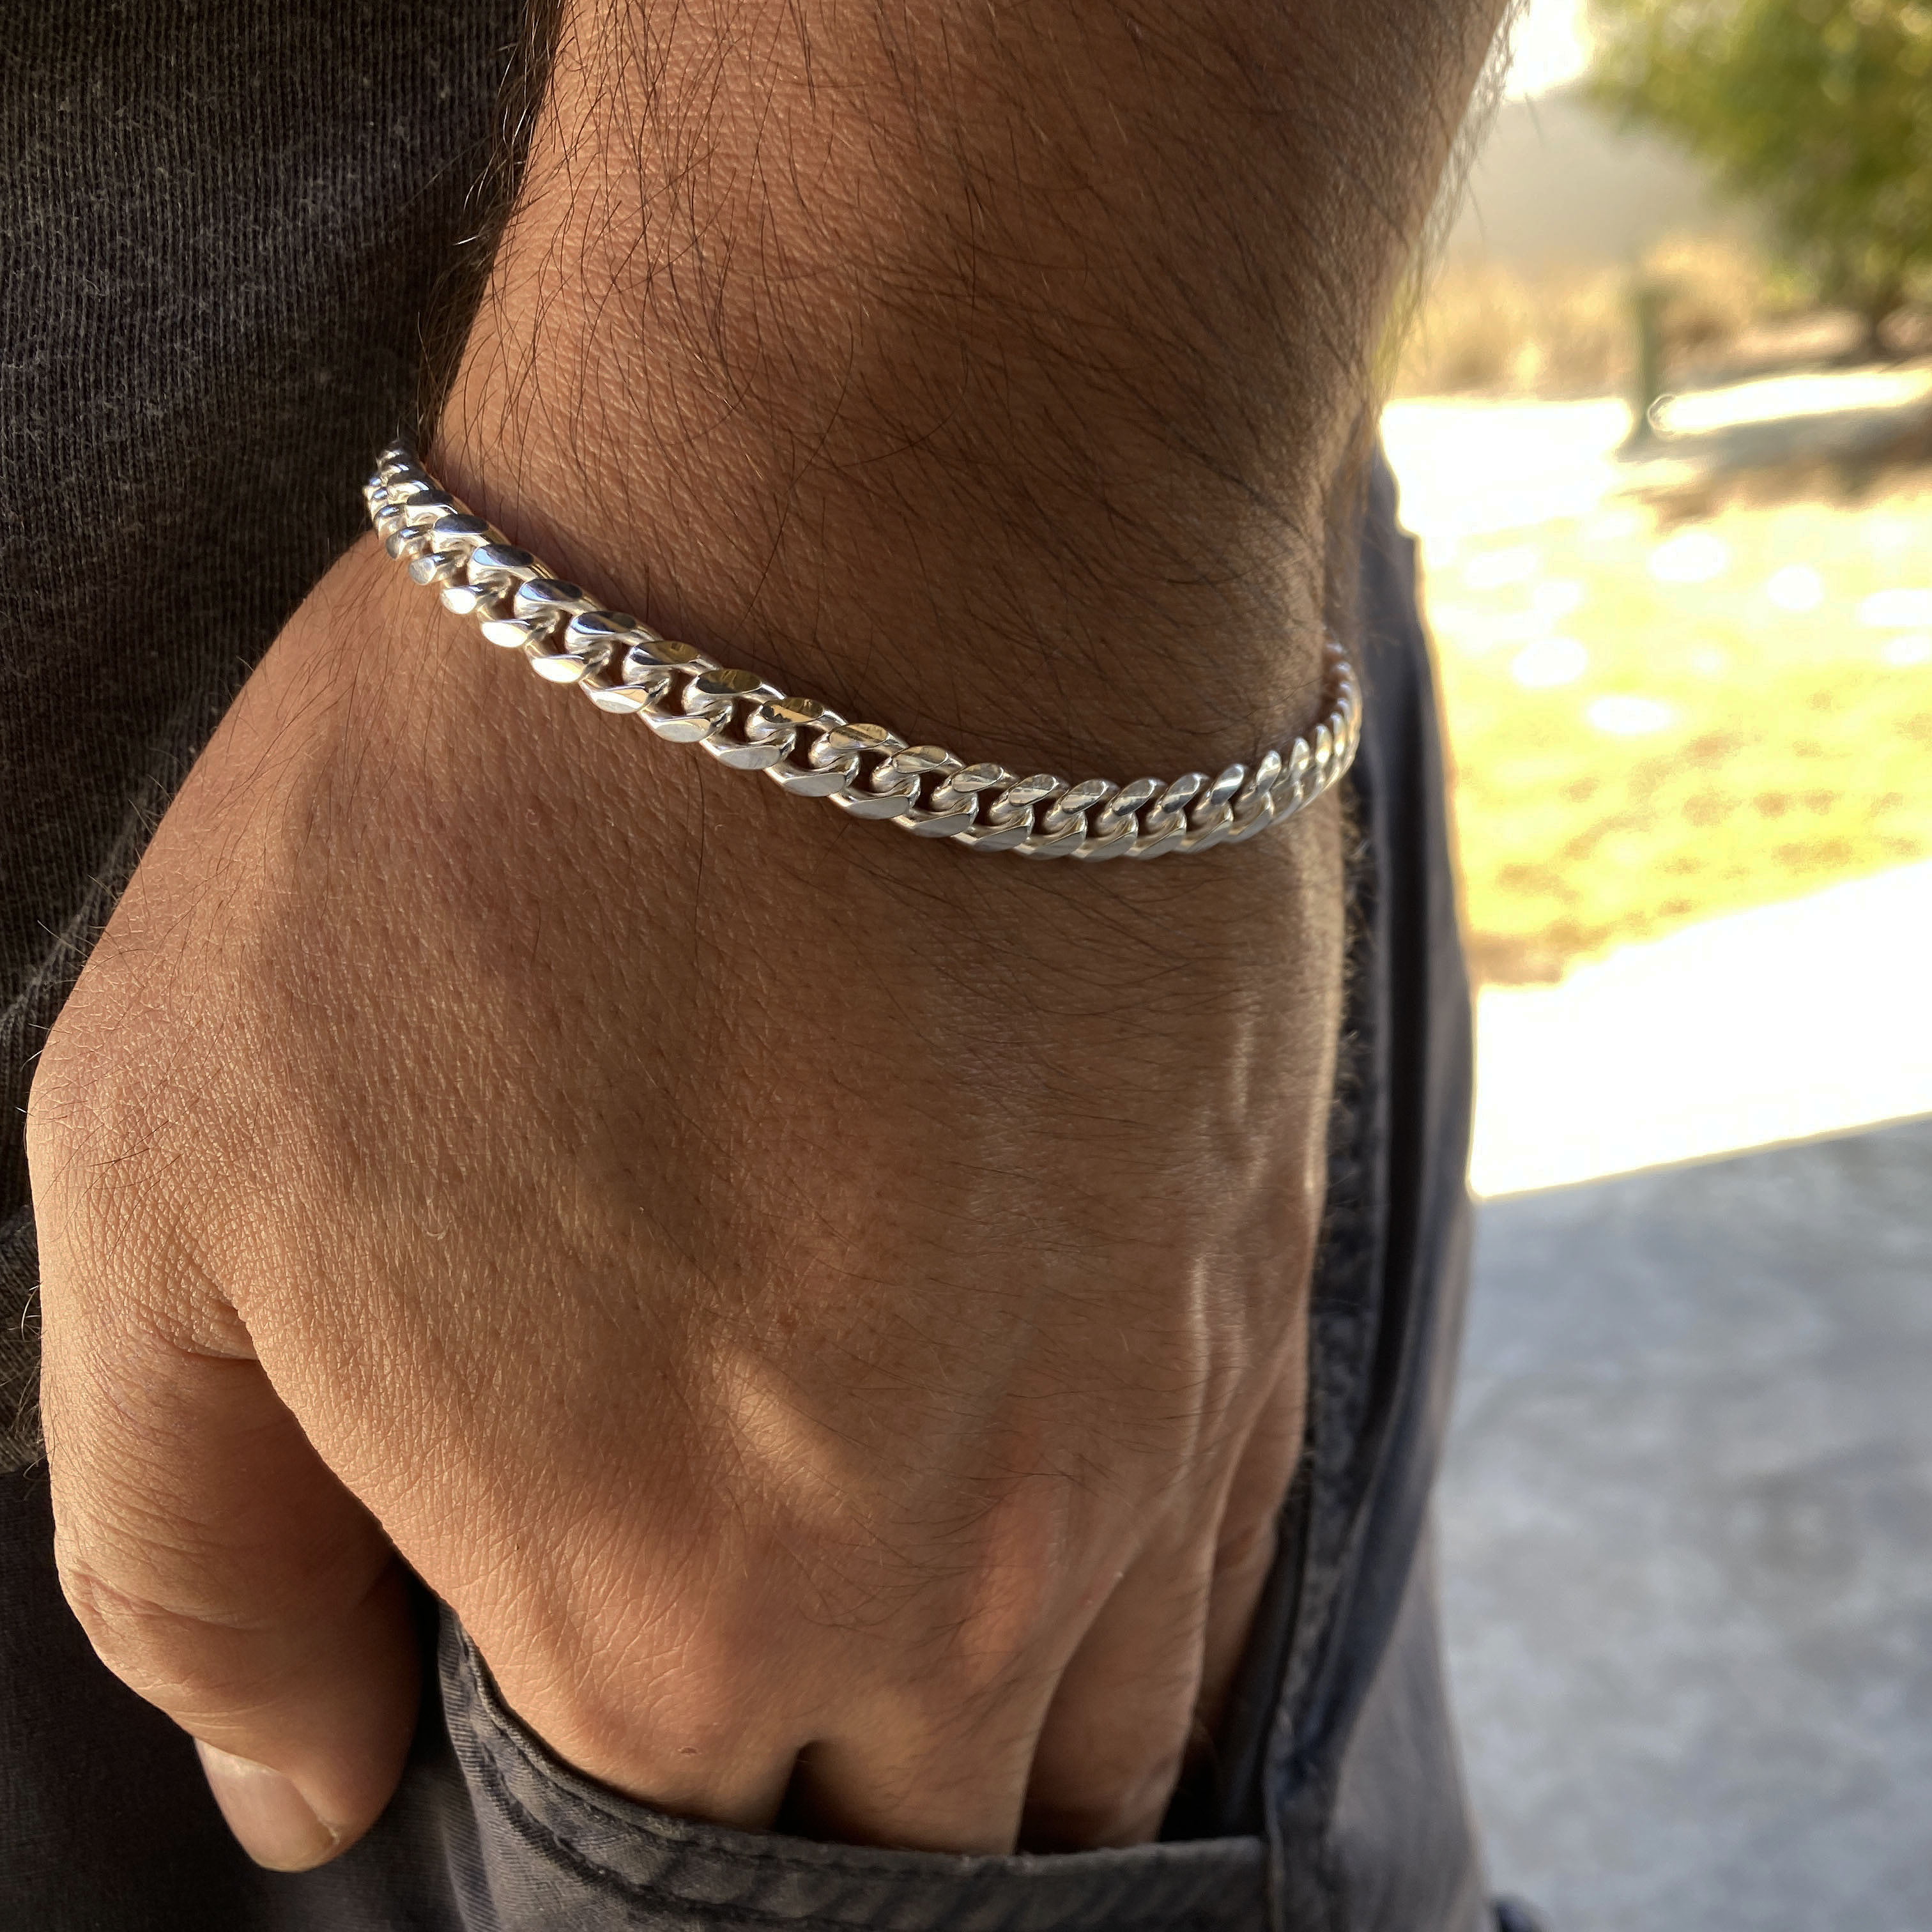 Mason Silver Curb Chain Bracelet - Waterproof Jewelry